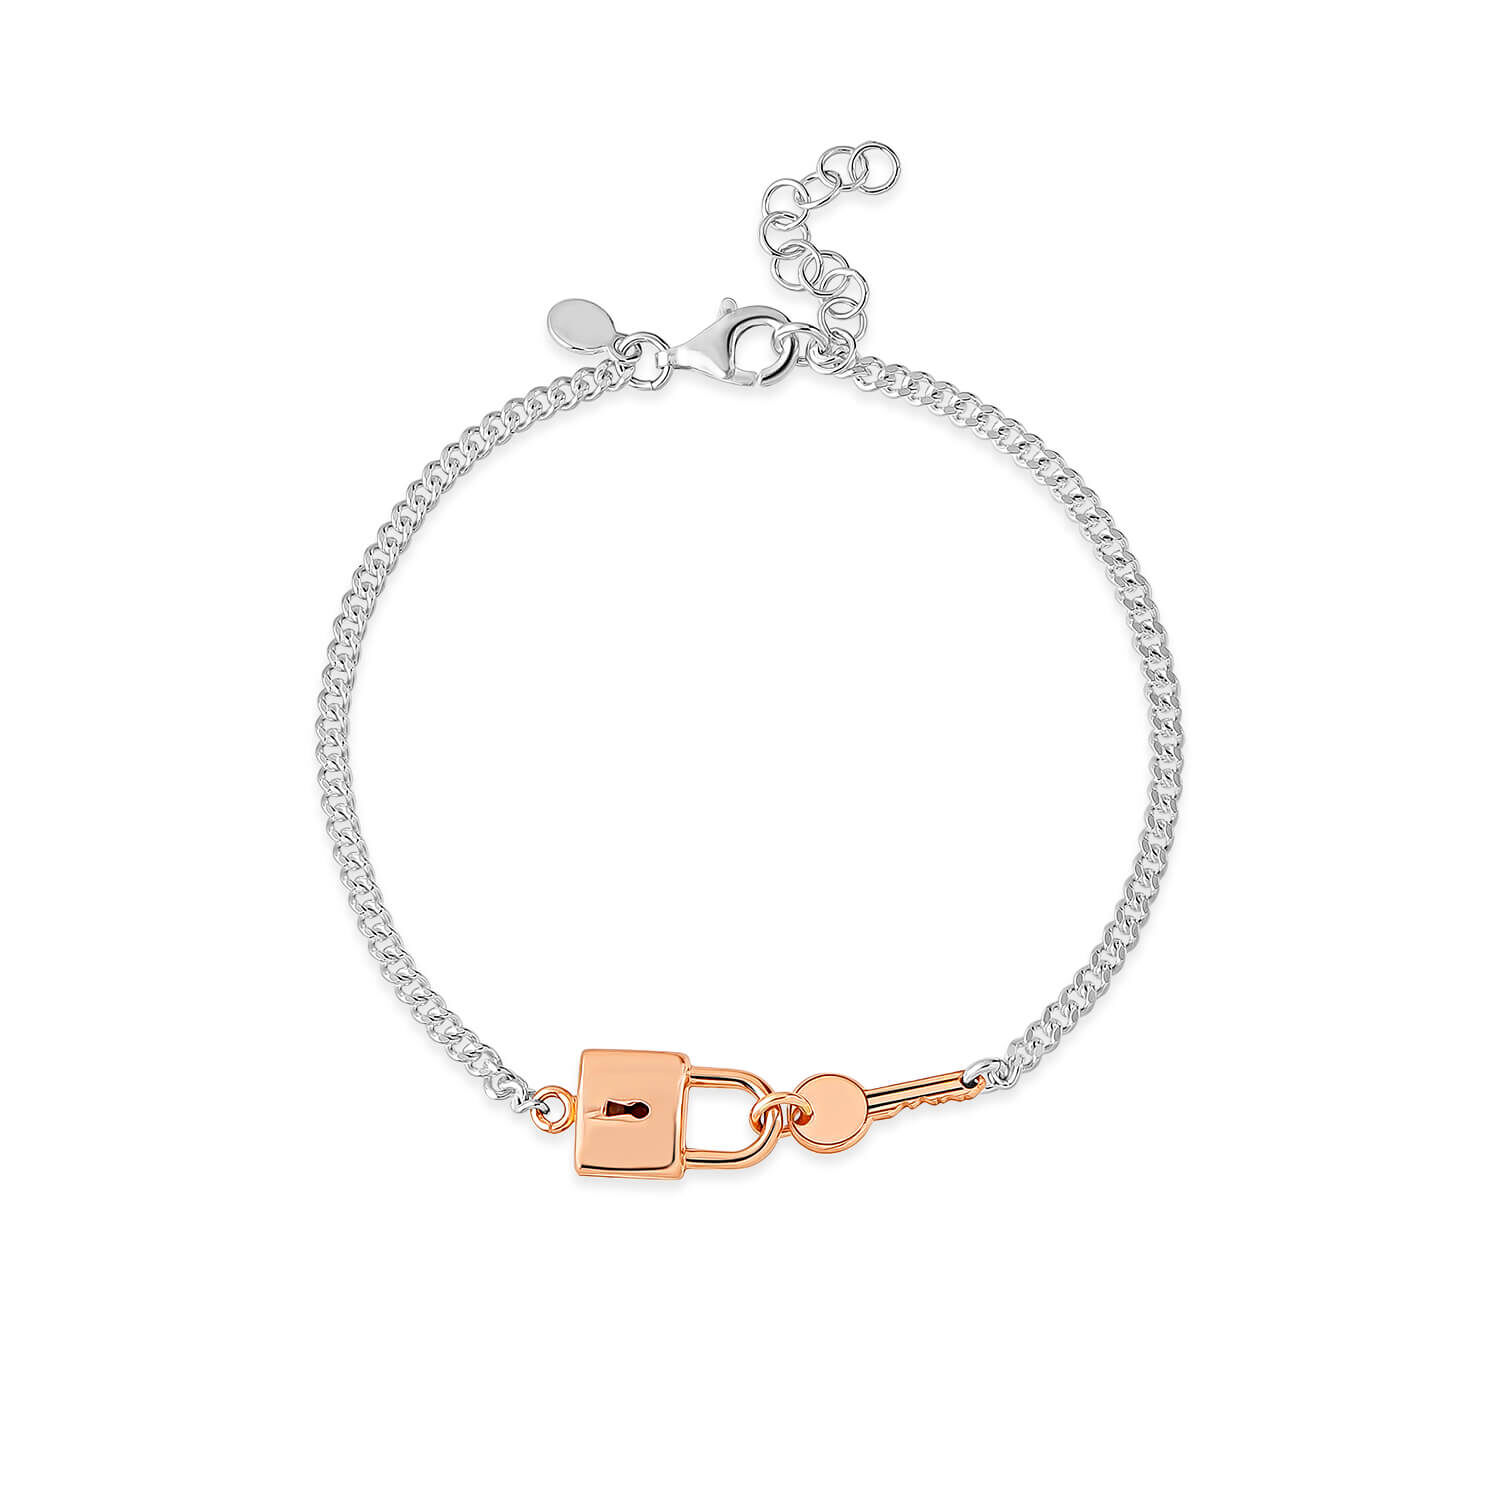 Lock and key couple bracelet(men's) and pendant (ladies') -